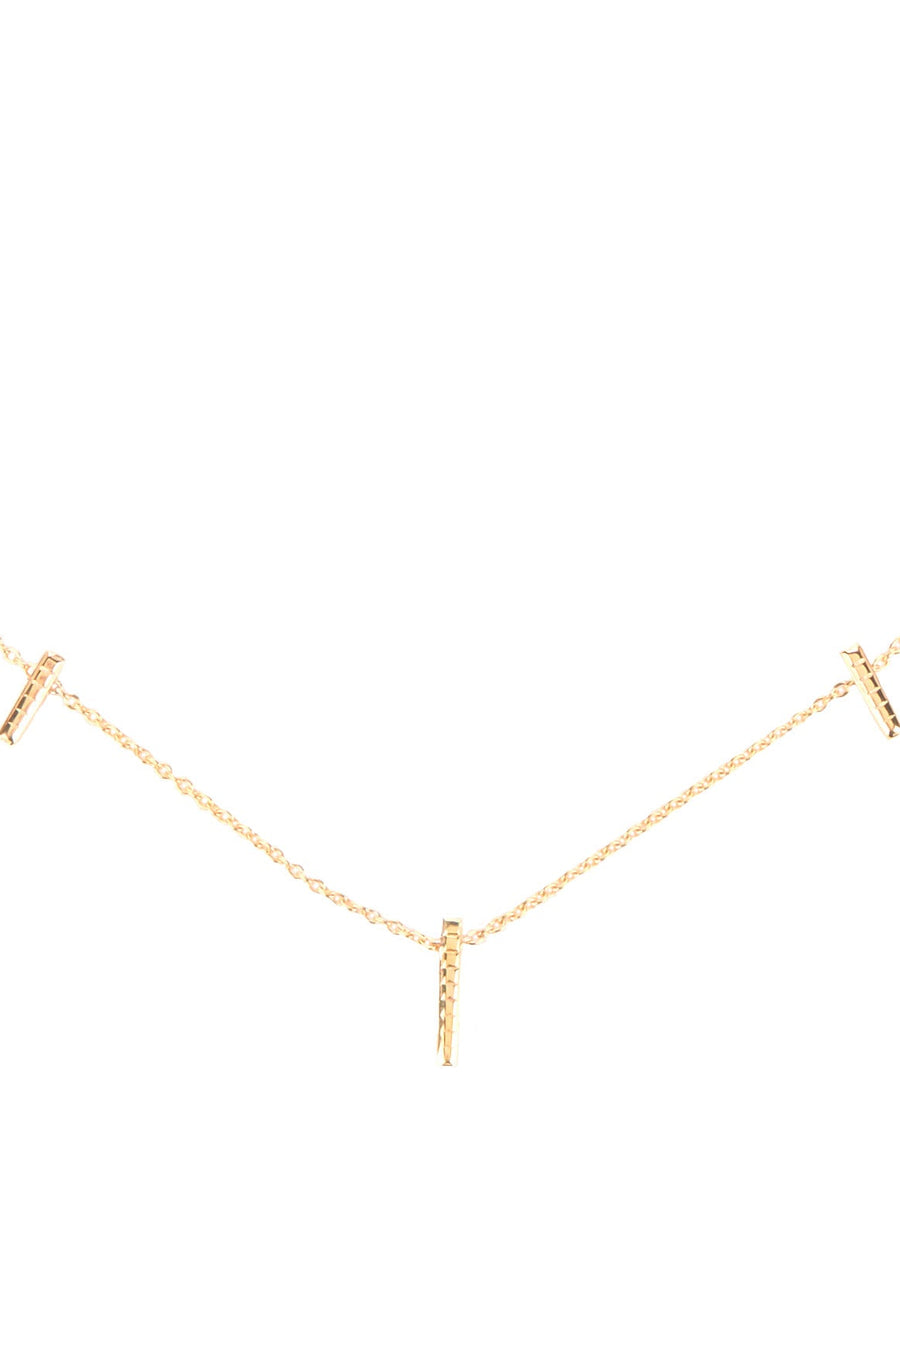 delicate gold vermeil necklace